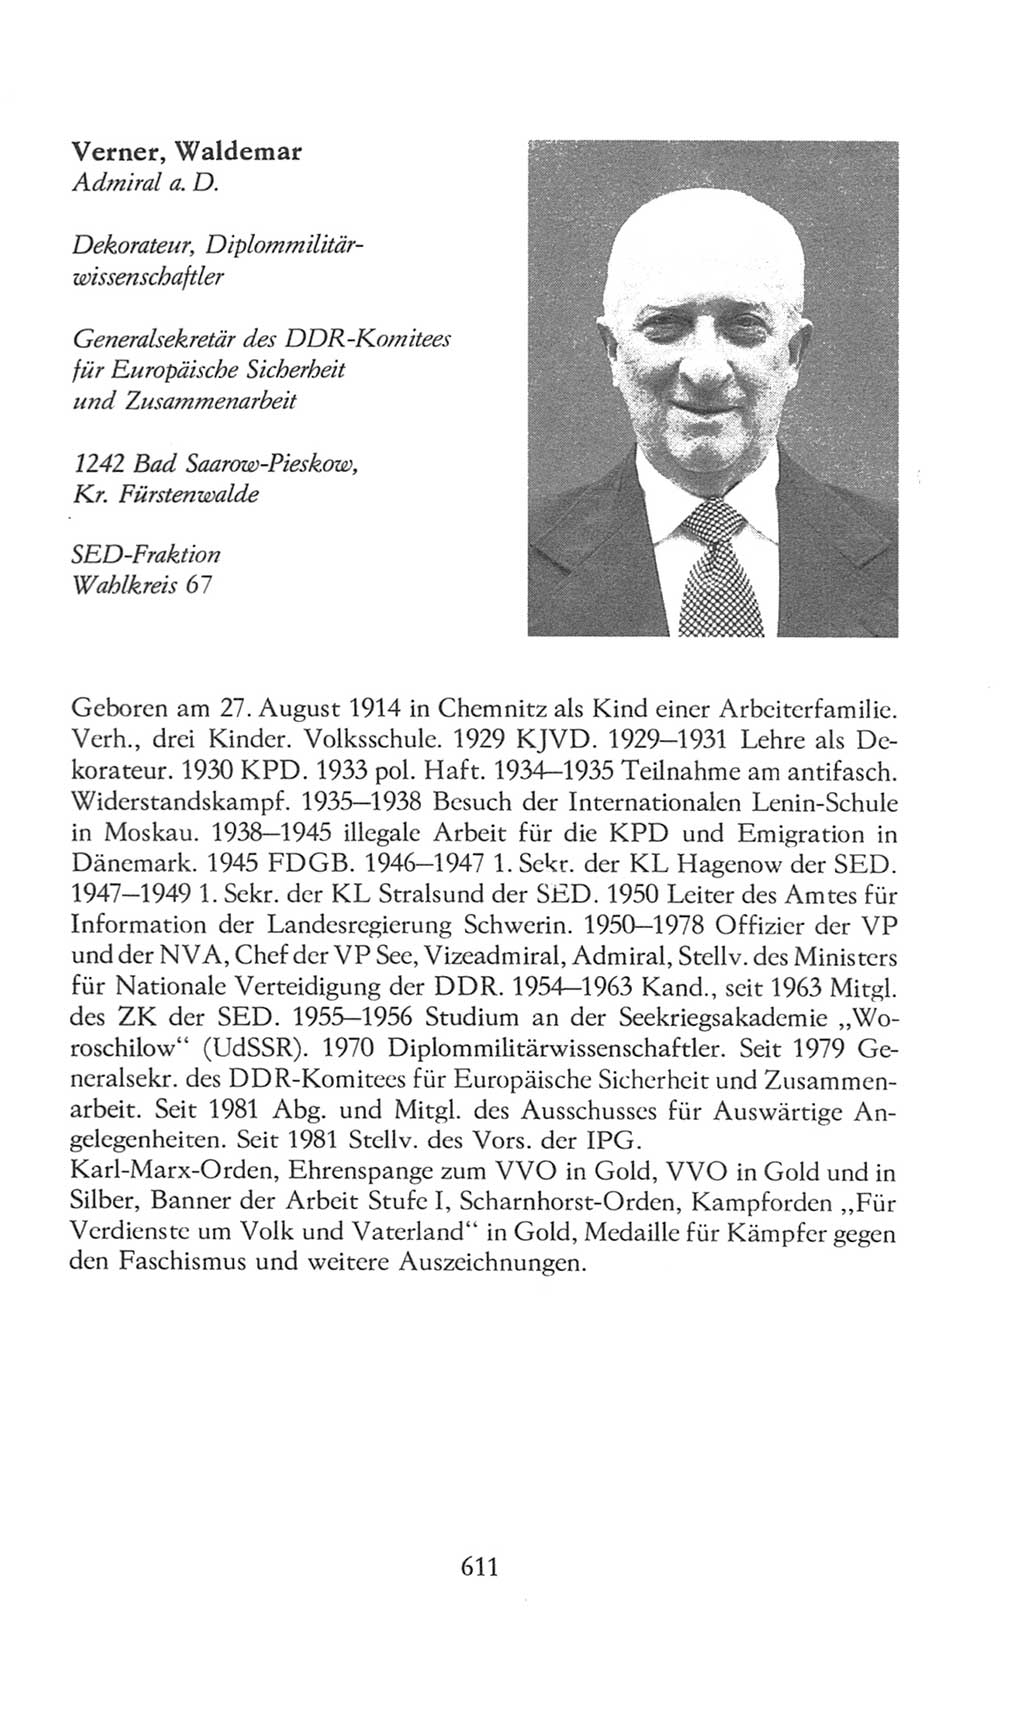 Volkskammer (VK) der Deutschen Demokratischen Republik (DDR), 8. Wahlperiode 1981-1986, Seite 611 (VK. DDR 8. WP. 1981-1986, S. 611)